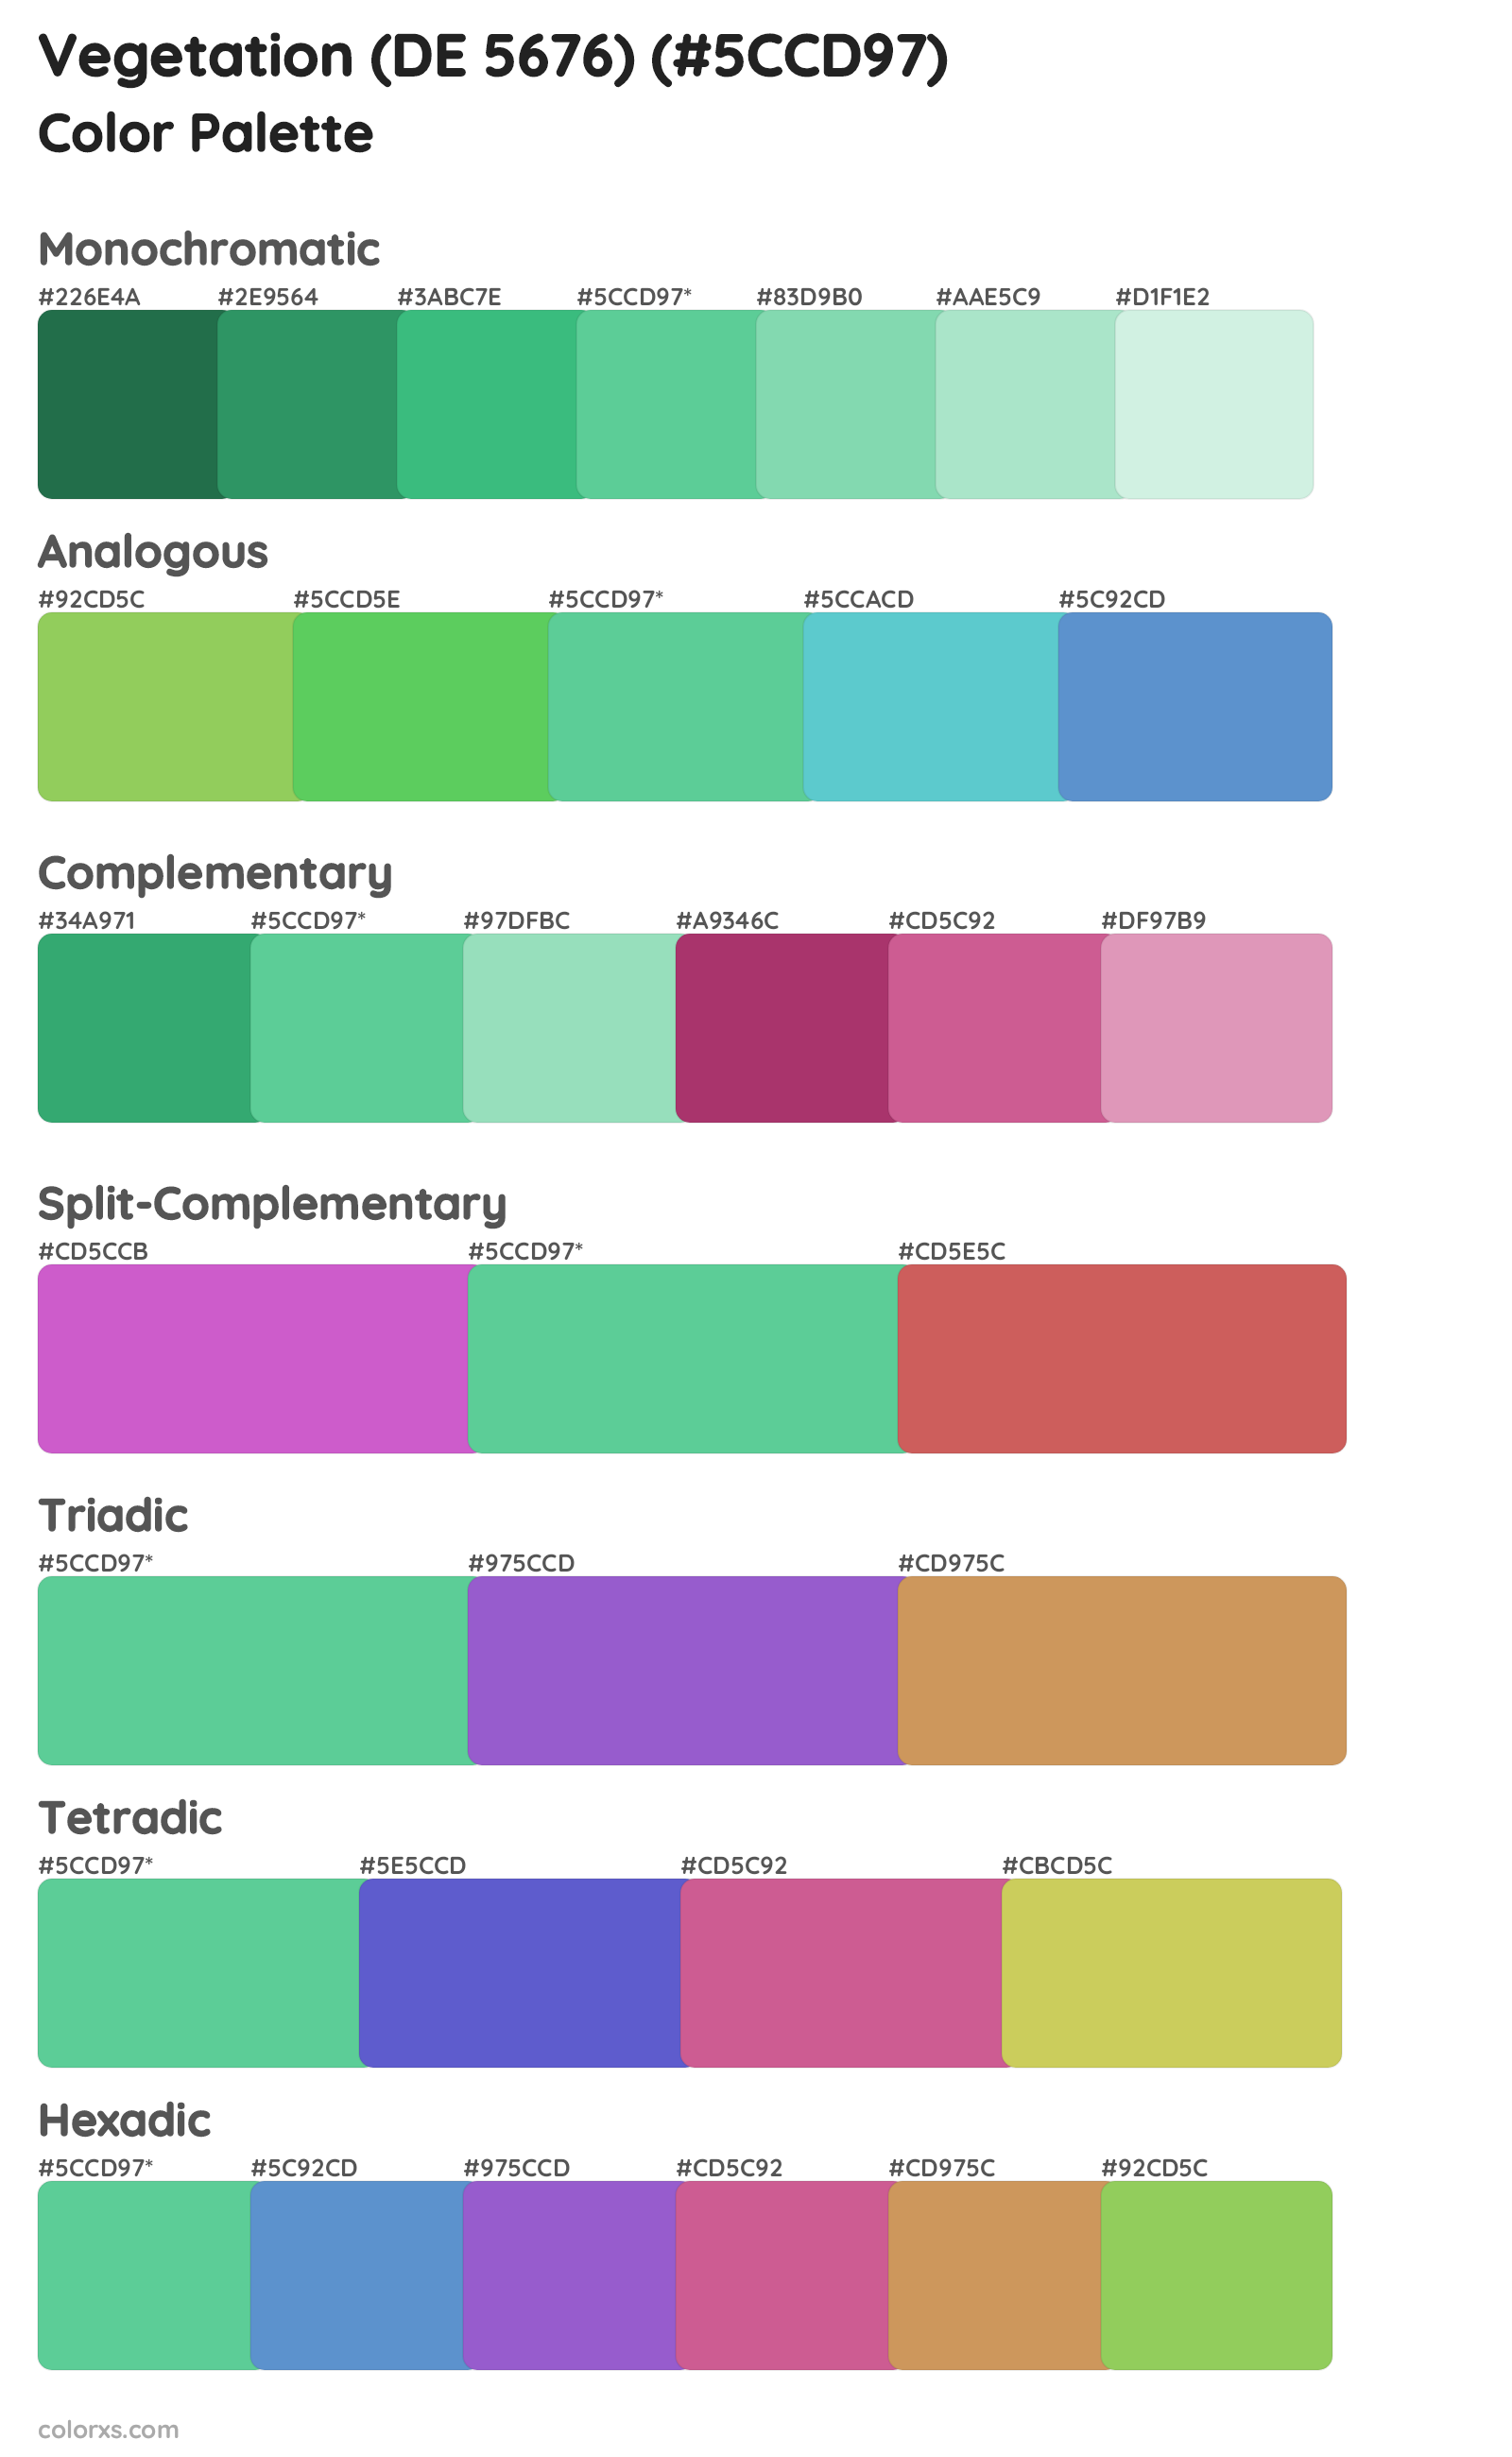 Vegetation (DE 5676) Color Scheme Palettes